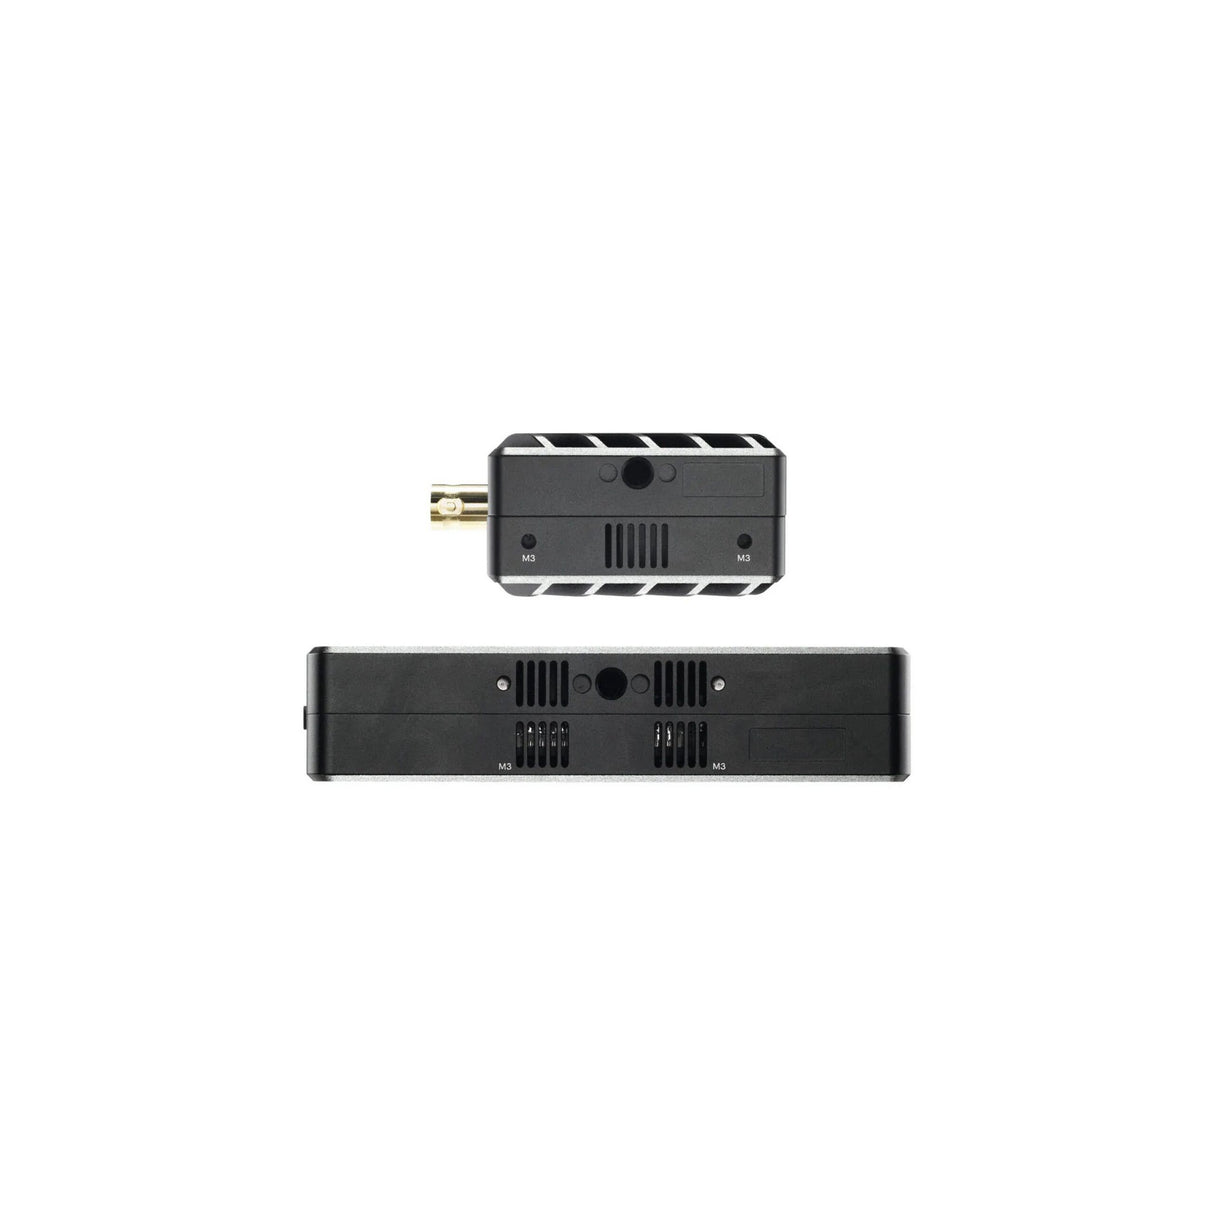 Teradek 10-2280-G Bolt 6 LT Max Wireless Video Transmitter/Receiver, Gold Mount